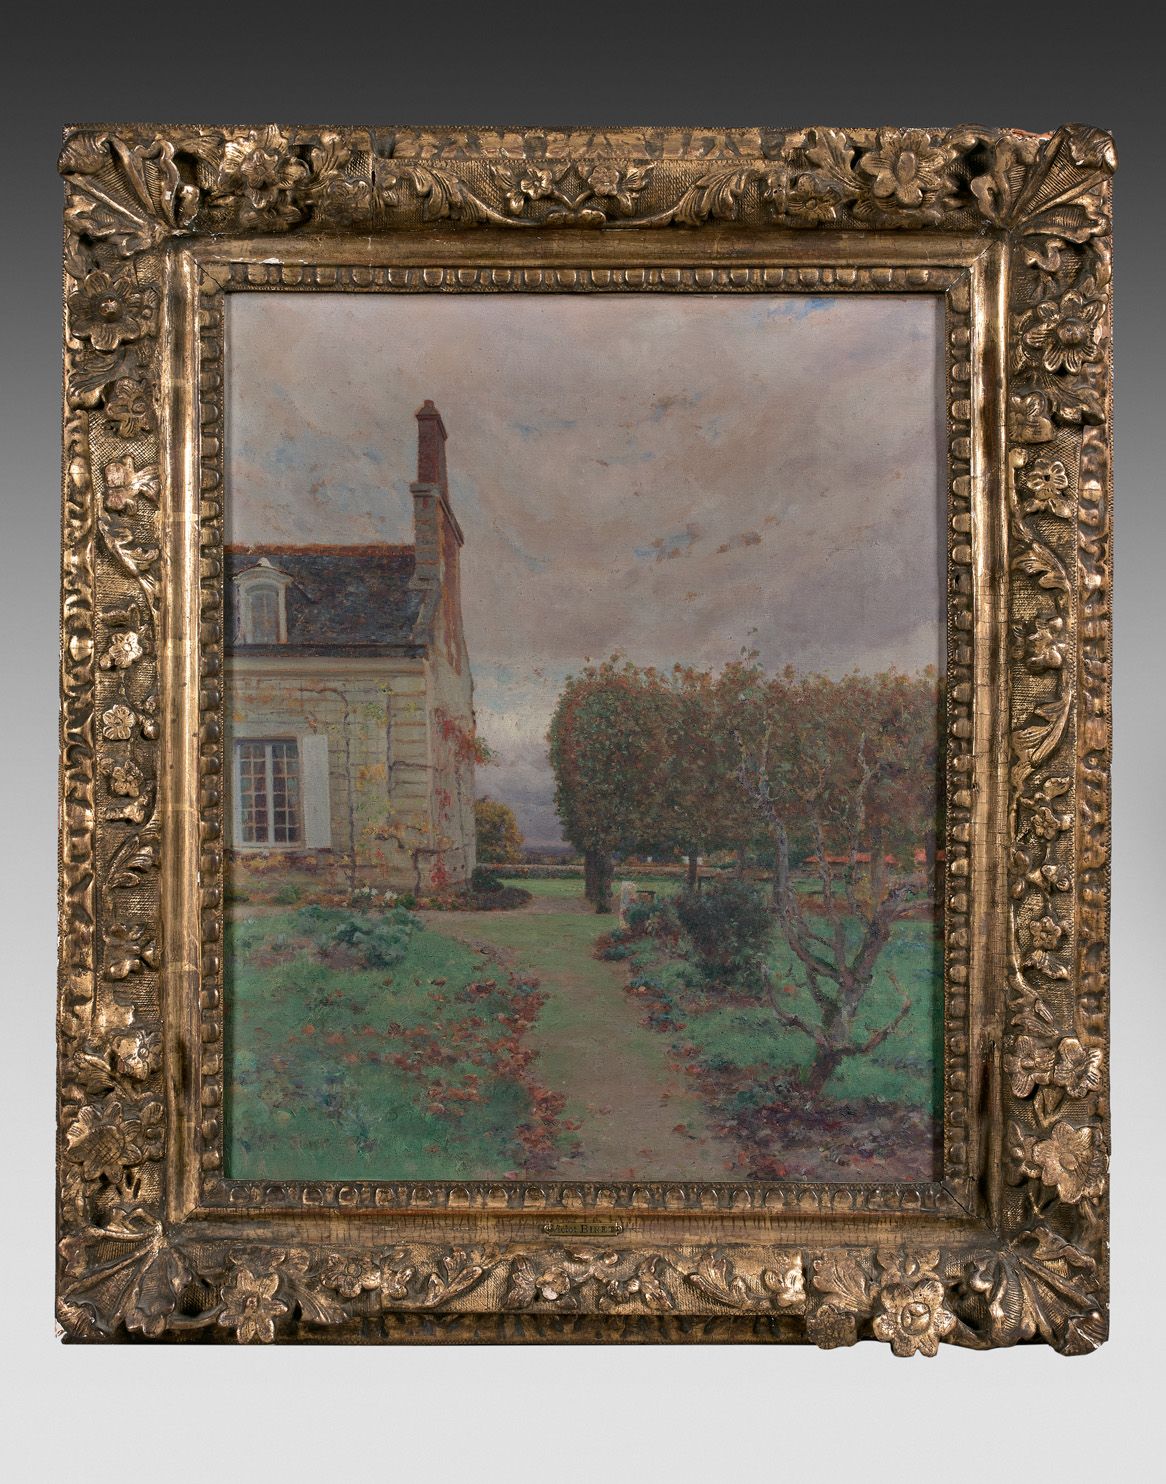 Null 维克多-比内(1849-1924)

秋天的花园

帆布左下方有签名。

雕刻和镀金的木框（根据尺寸给出）。

高度45 - 宽度36厘米